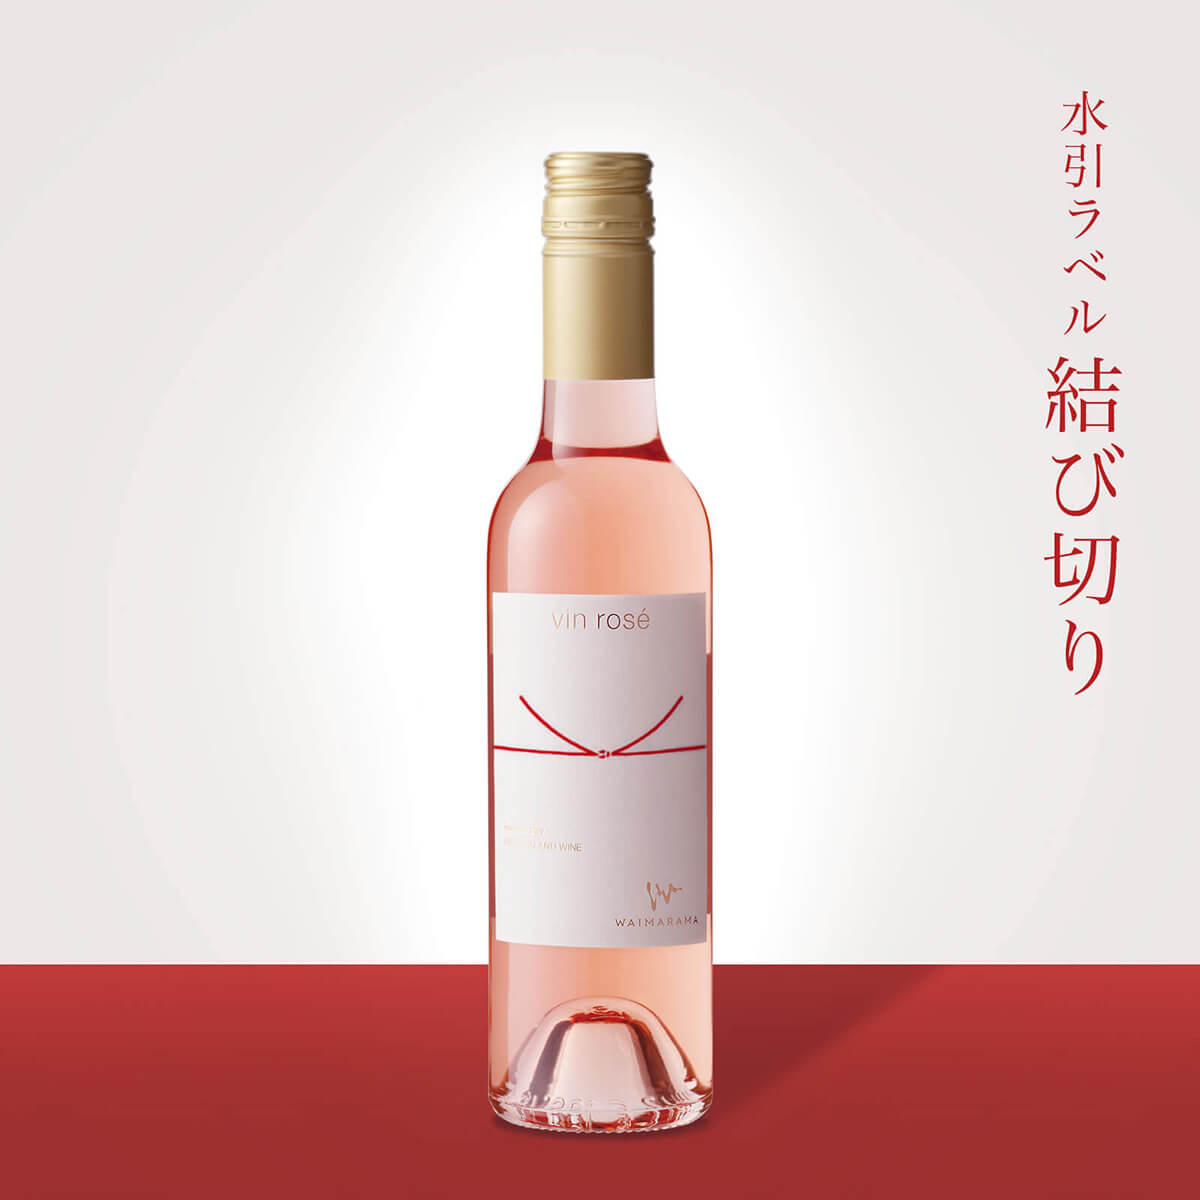 画像1: vin rose 2019 ハーフ375ml【結び切り】 (1)